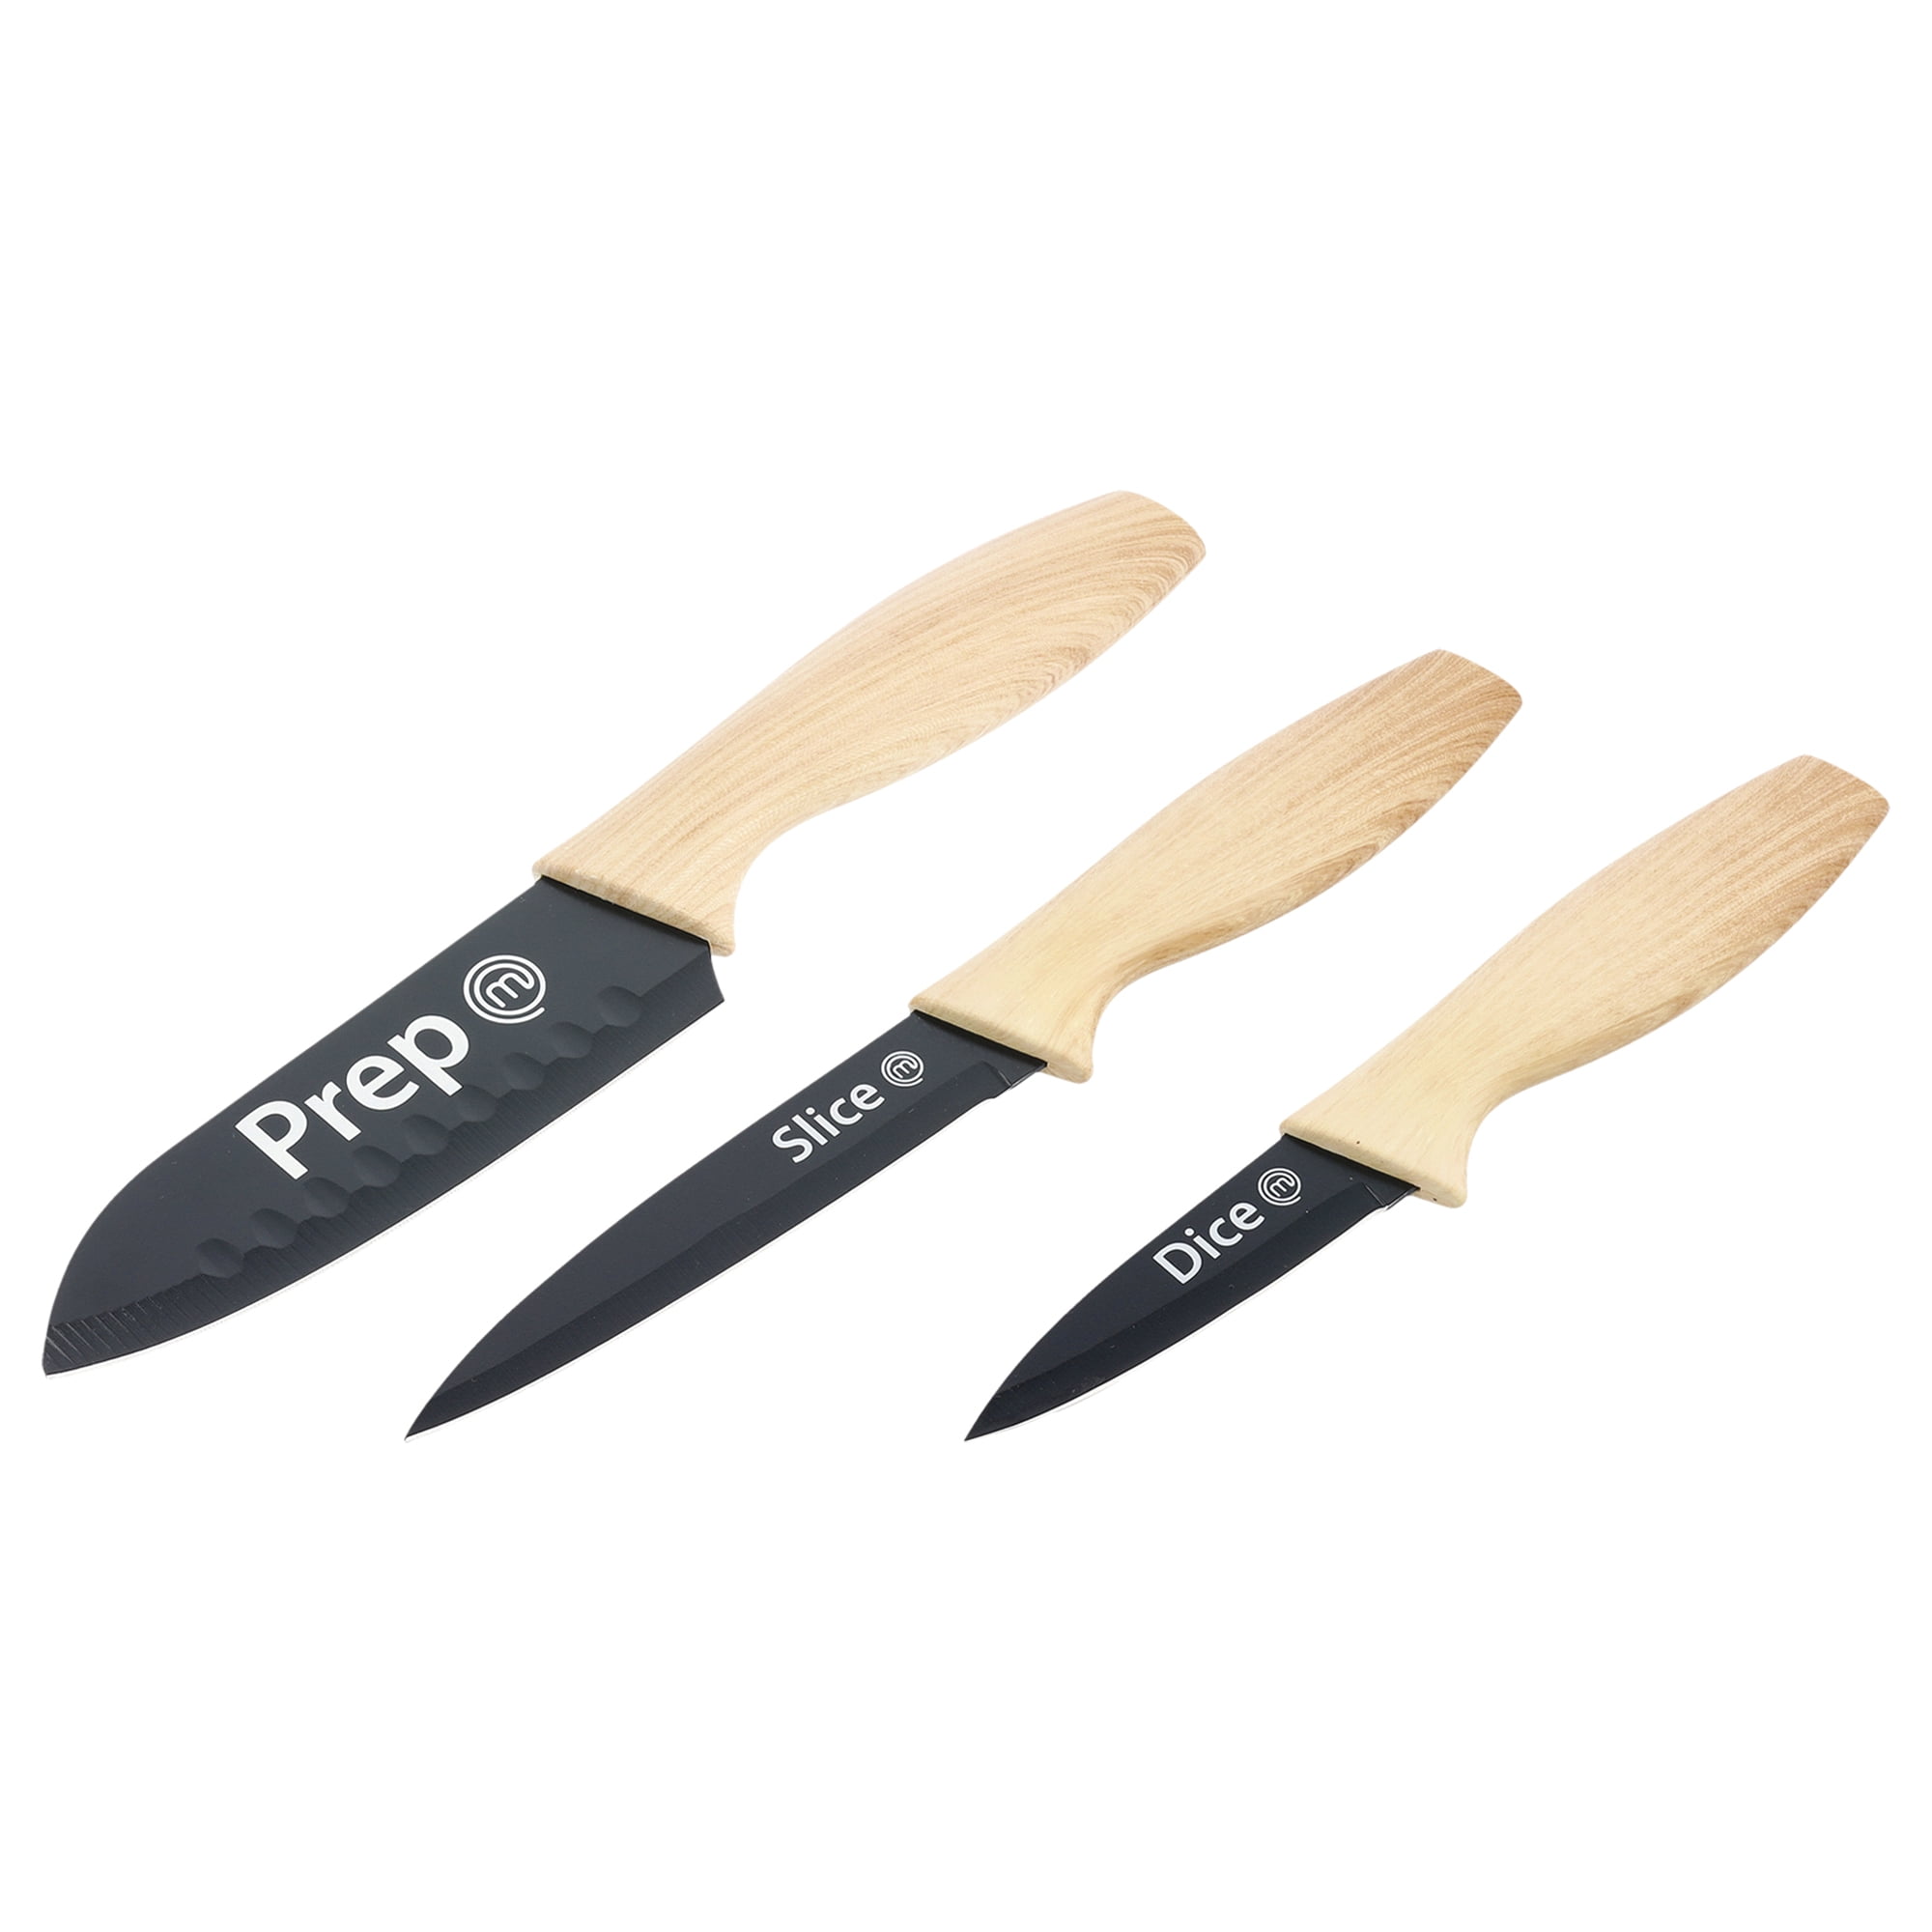 Masterchef 6-Piece Japanese Knife Set, Extra Sharp Kitchen Knives